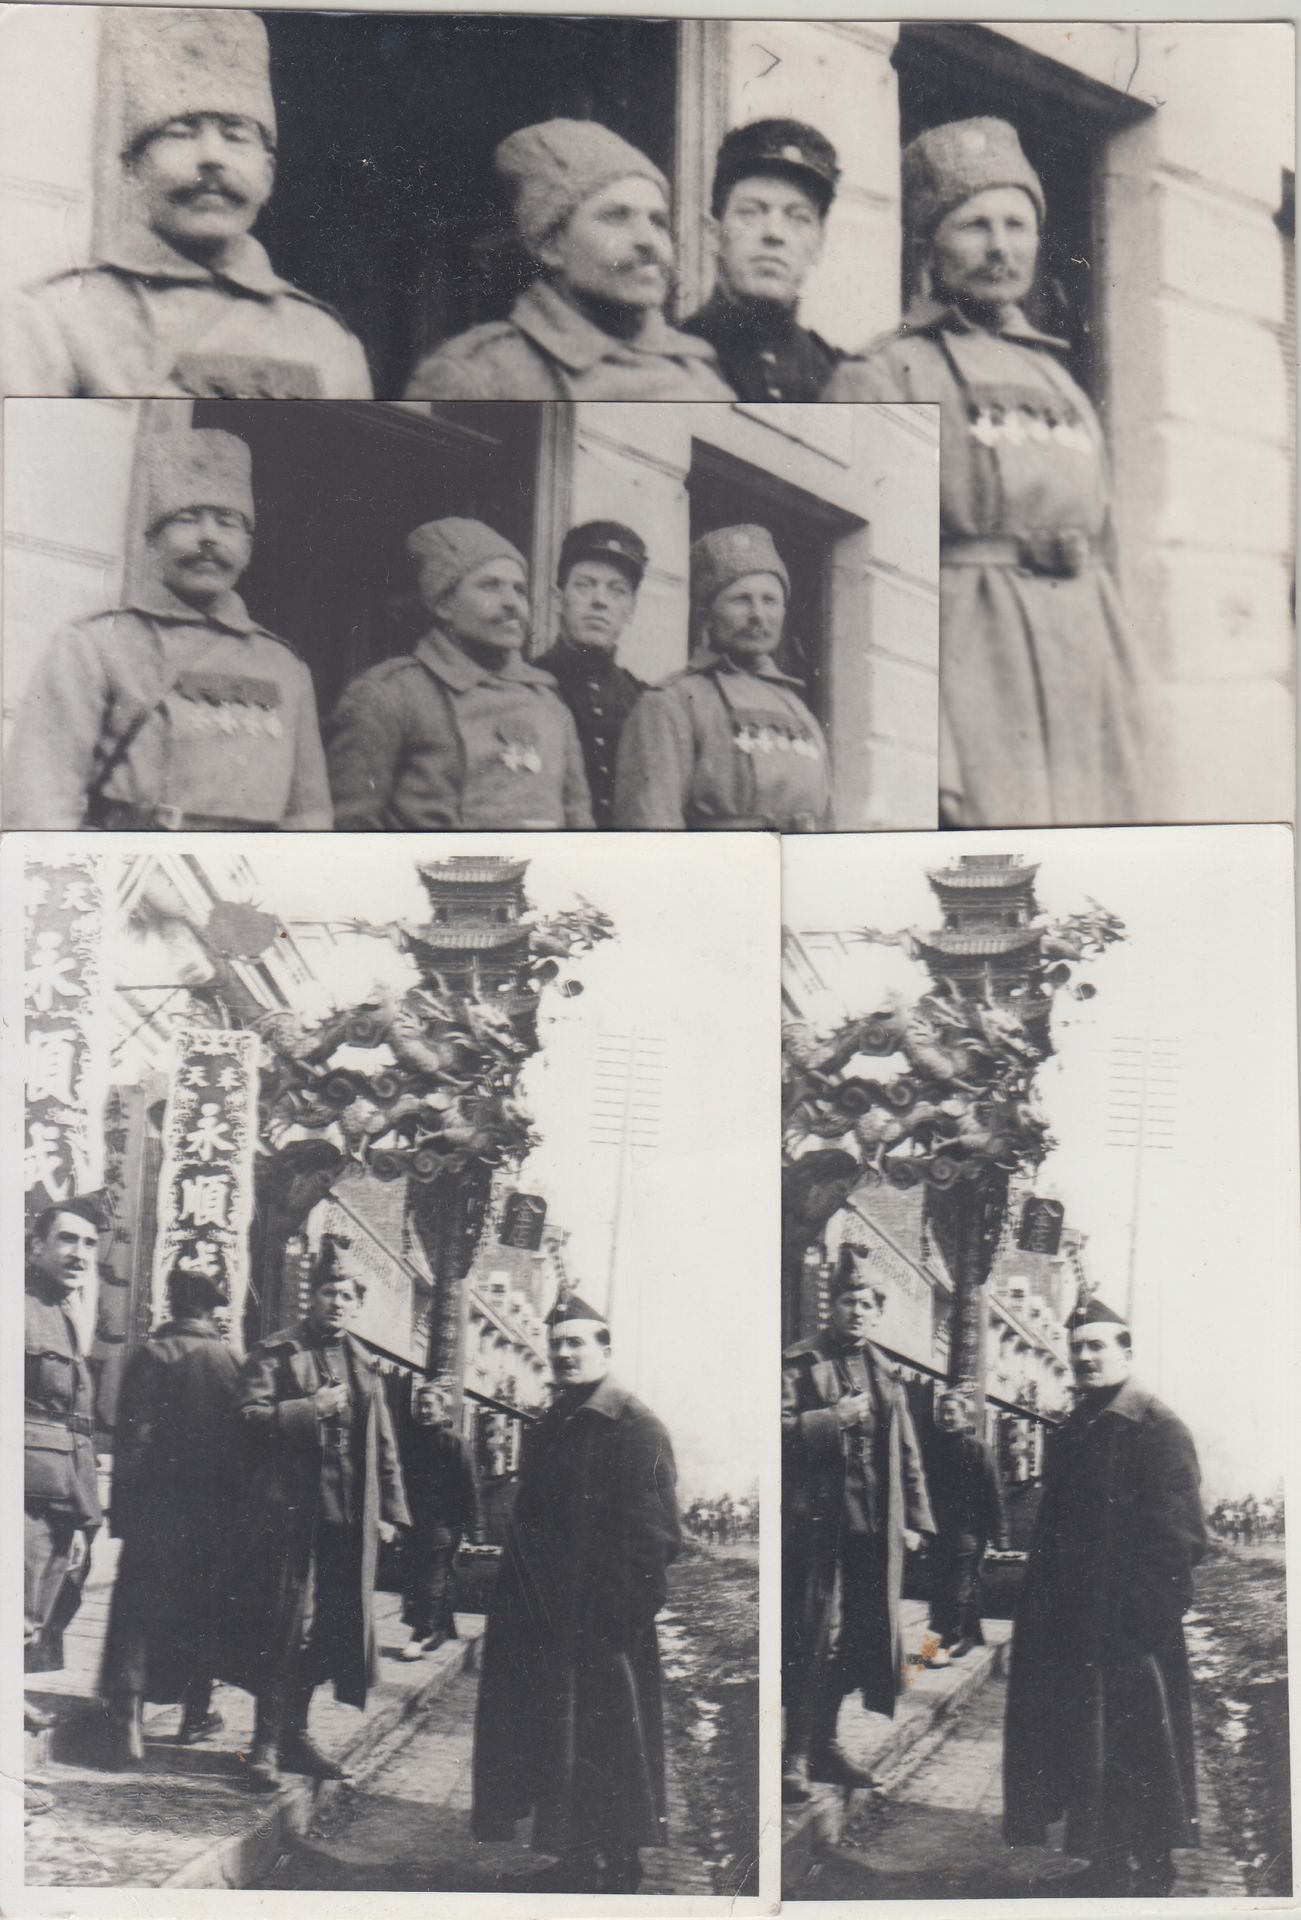 Photographies de soldats belges en Mandchourie 中国，满洲里，约1918年

在满洲里的比利时士兵的照片



包&hellip;